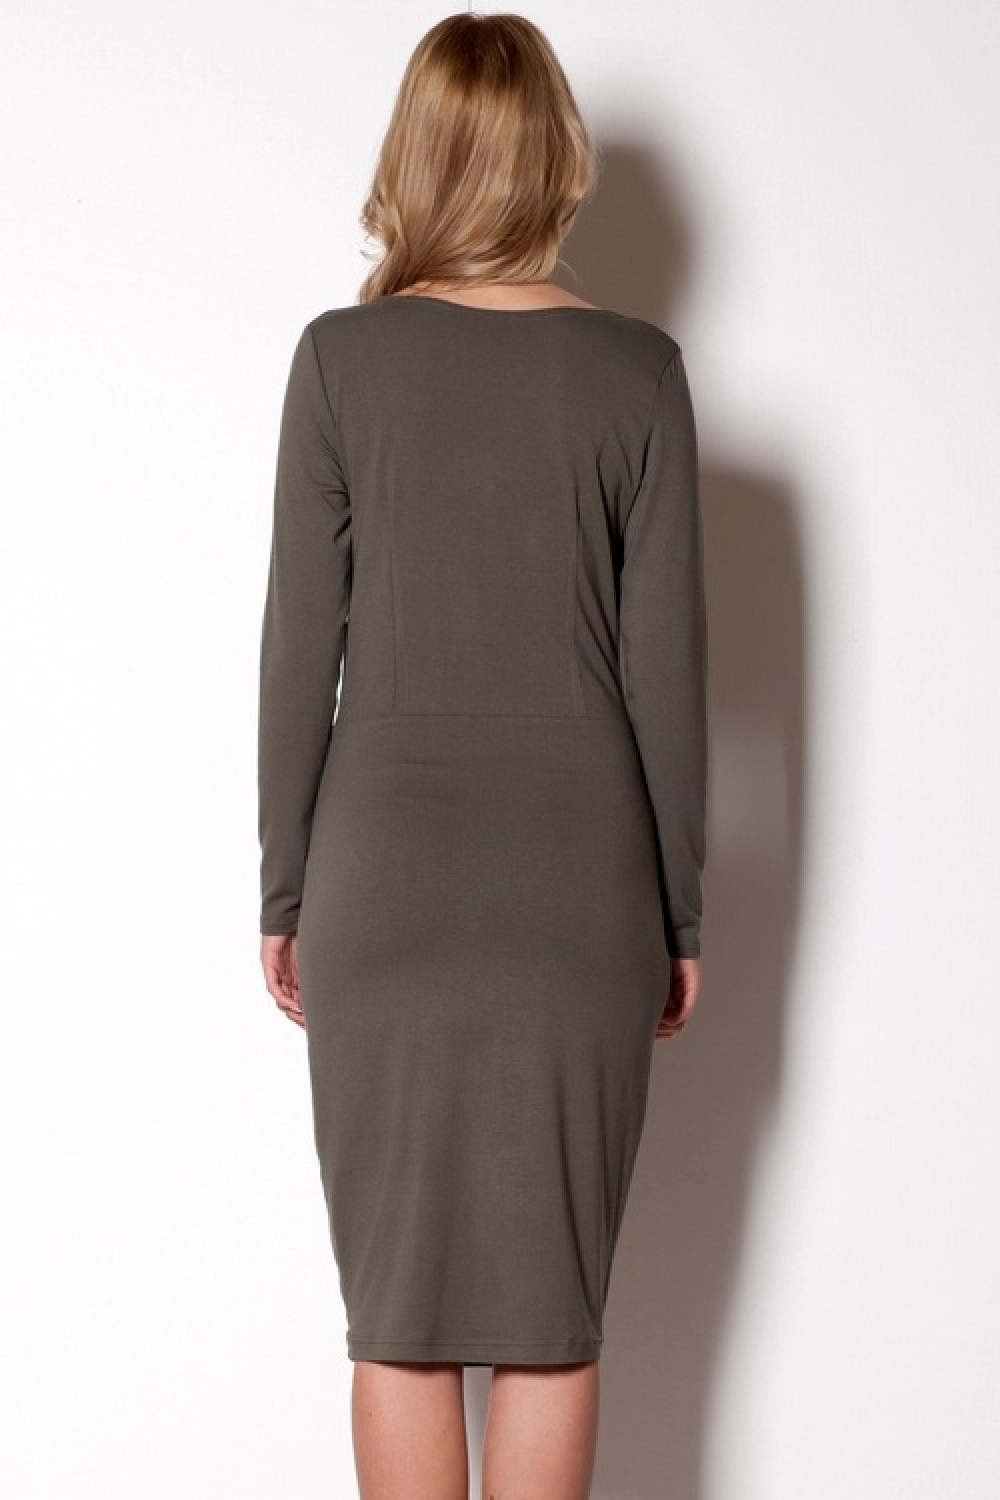 Dámské šaty olivová L model 6323587 - Figl